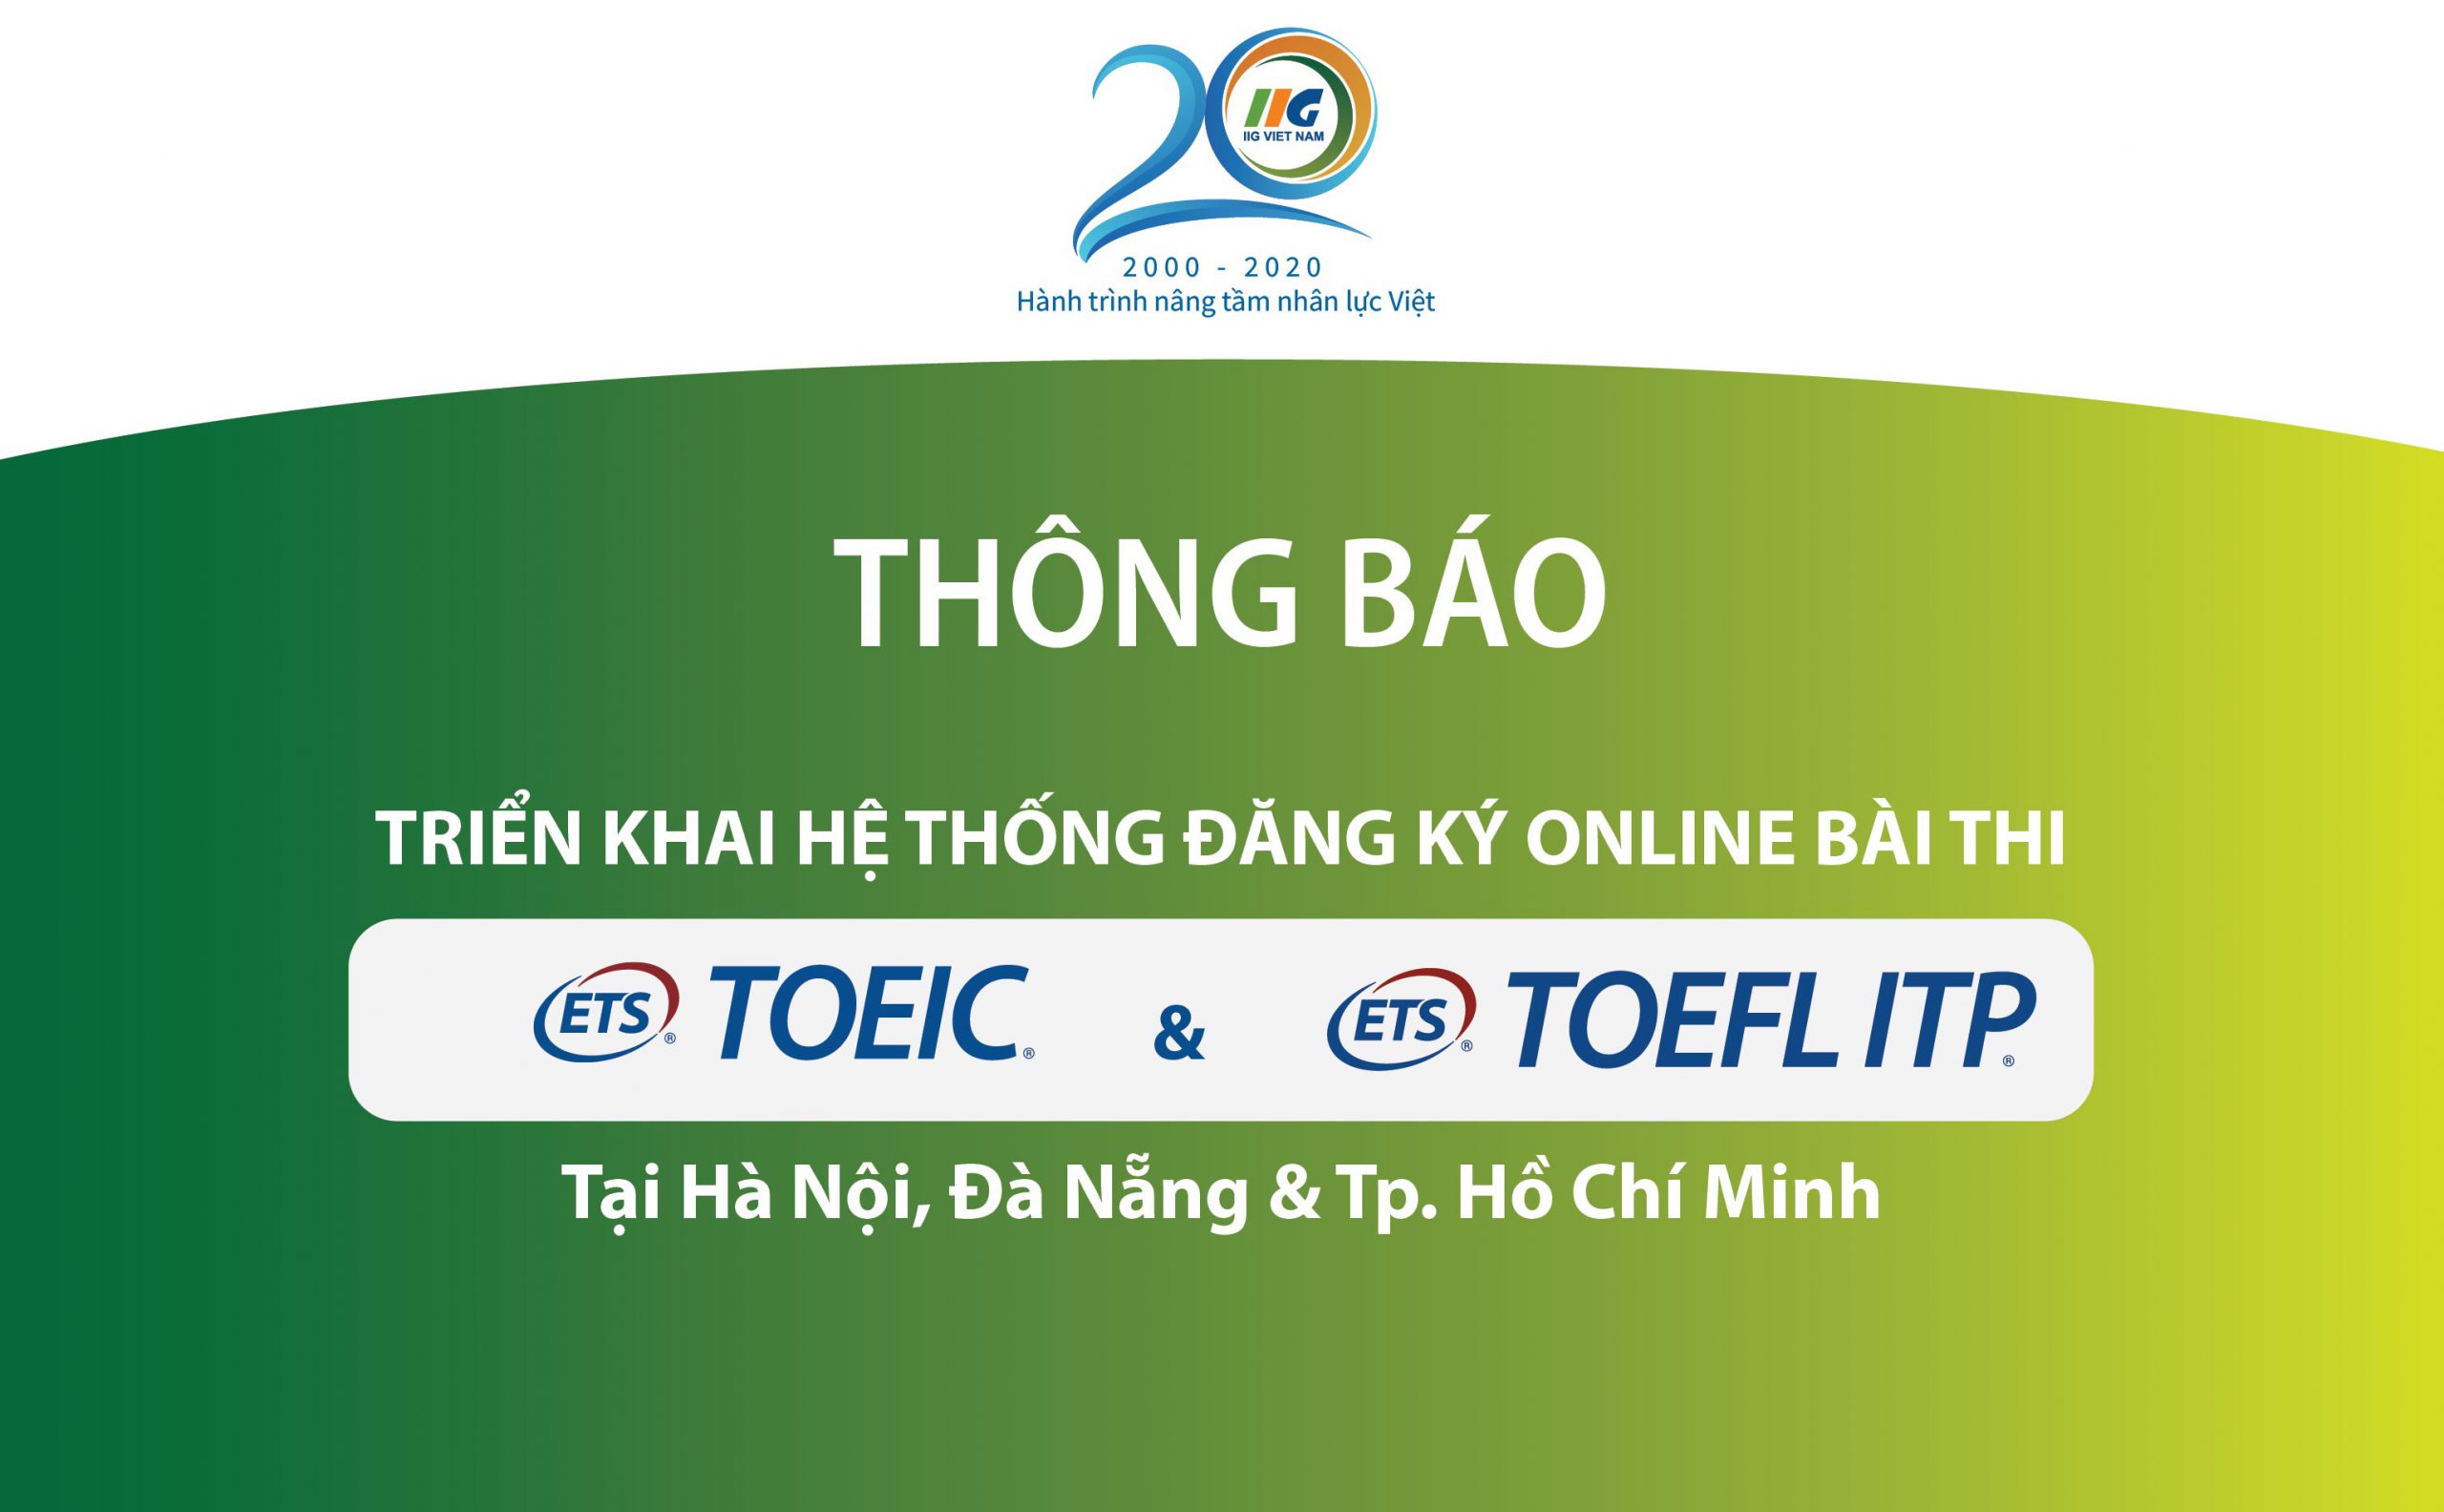 Thông báo triển khai hệ thống đăng ký Online bài thi TOEIC và TOEFL ITP tại Hà Nội, Đà Nẵng & TP. Hồ Chí Minh